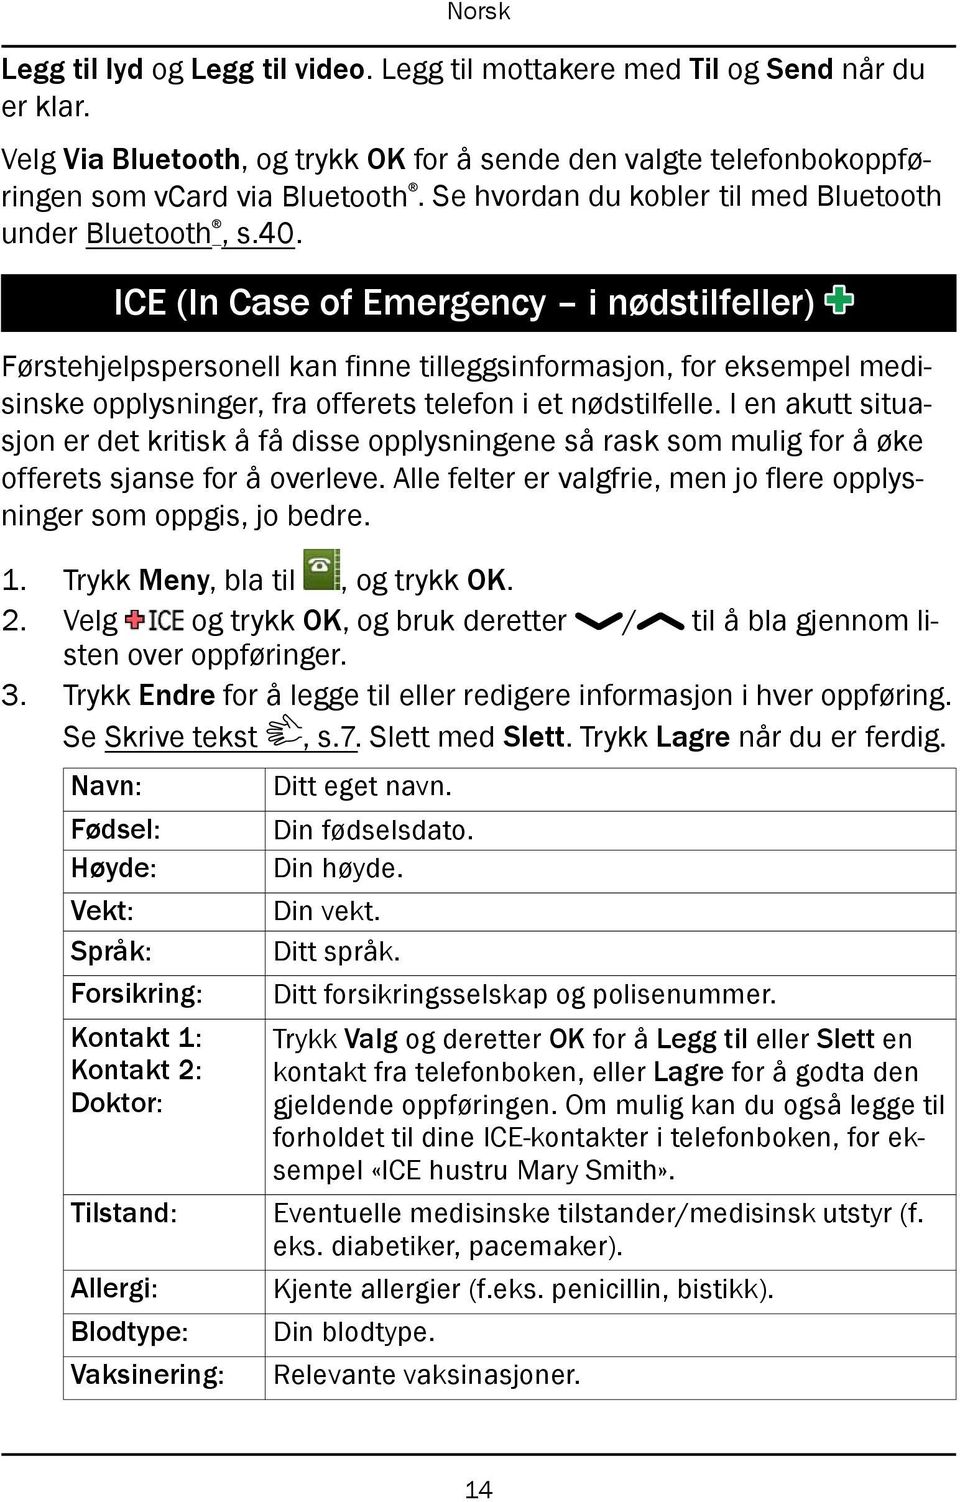 ICE (In Case of Emergency i nødstilfeller) Førstehjelpspersonell kan finne tilleggsinformasjon, for eksempel medisinske opplysninger, fra offerets telefon i et nødstilfelle.